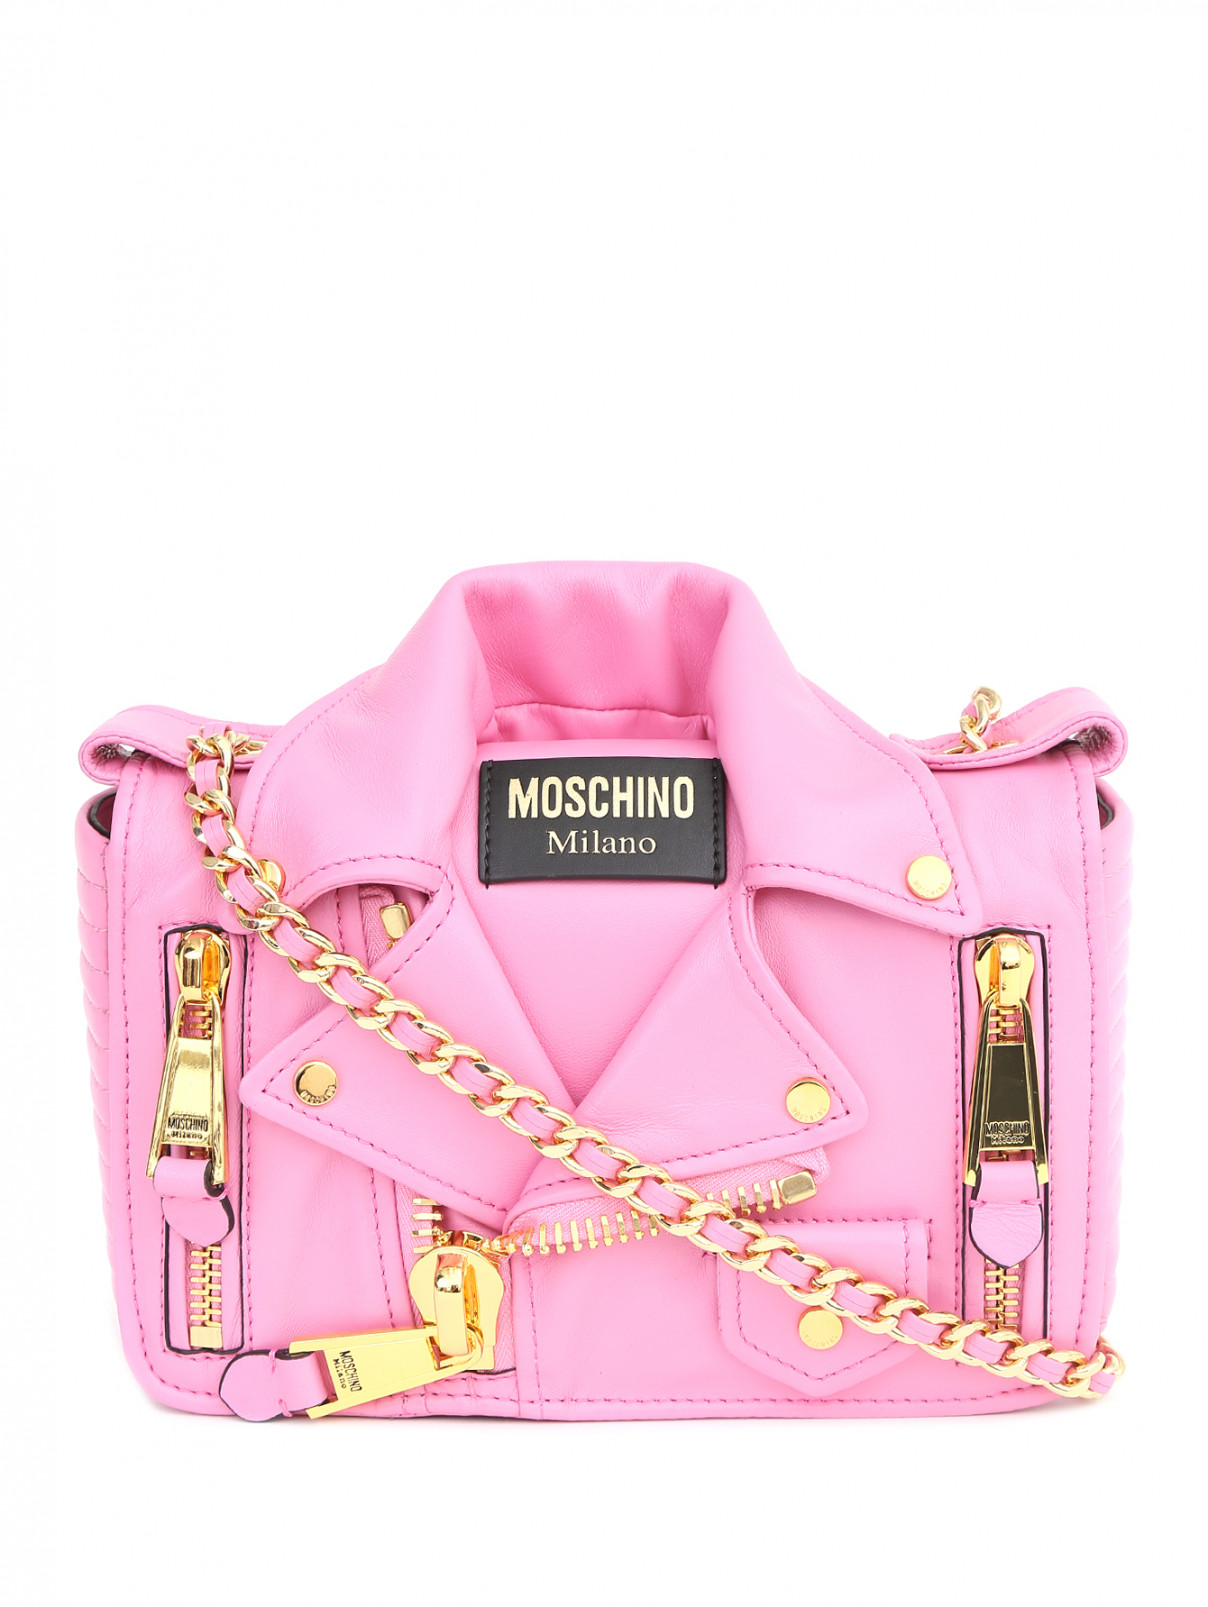 Сумка кожаная  на цепочке с фурнитурой Moschino Couture  –  Общий вид  – Цвет:  Розовый